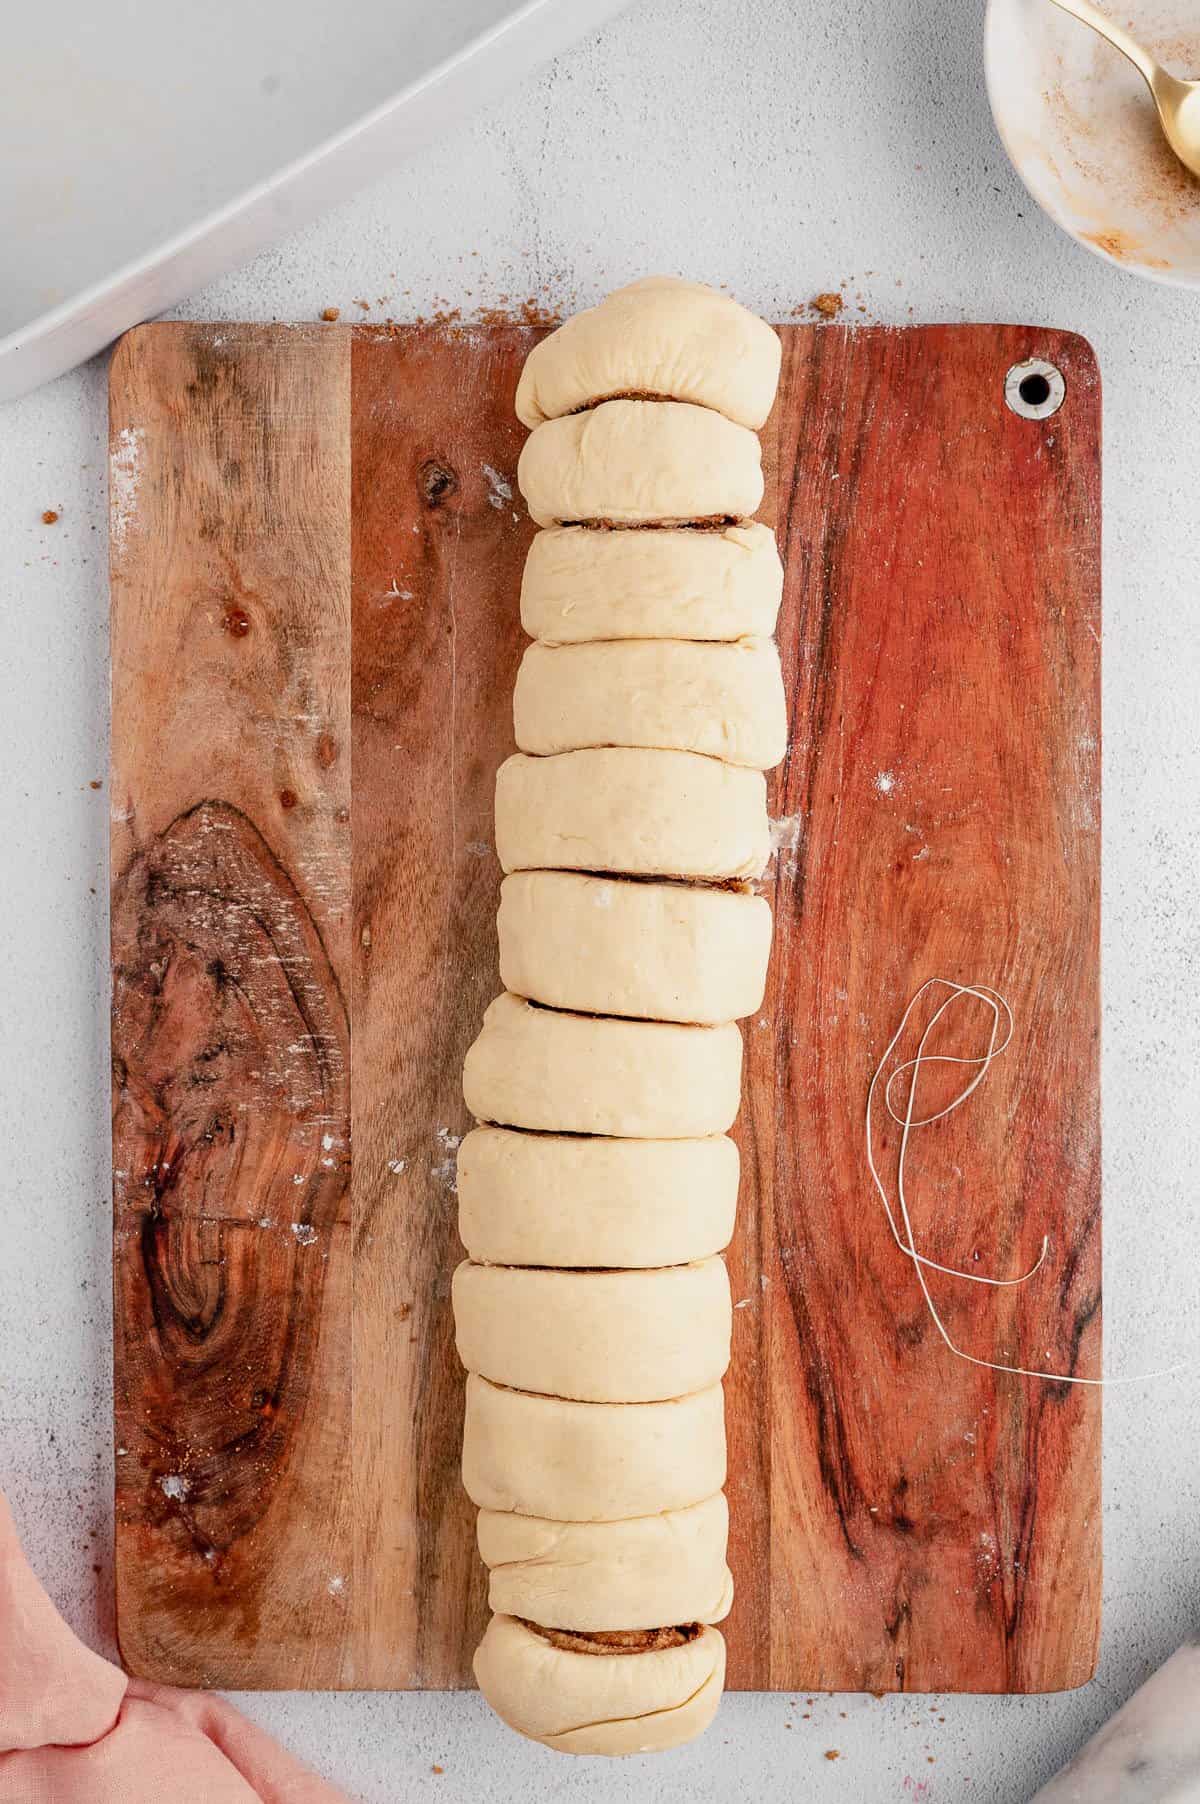 A dough log cut into cinnamon rolls on a wooden cutting board.